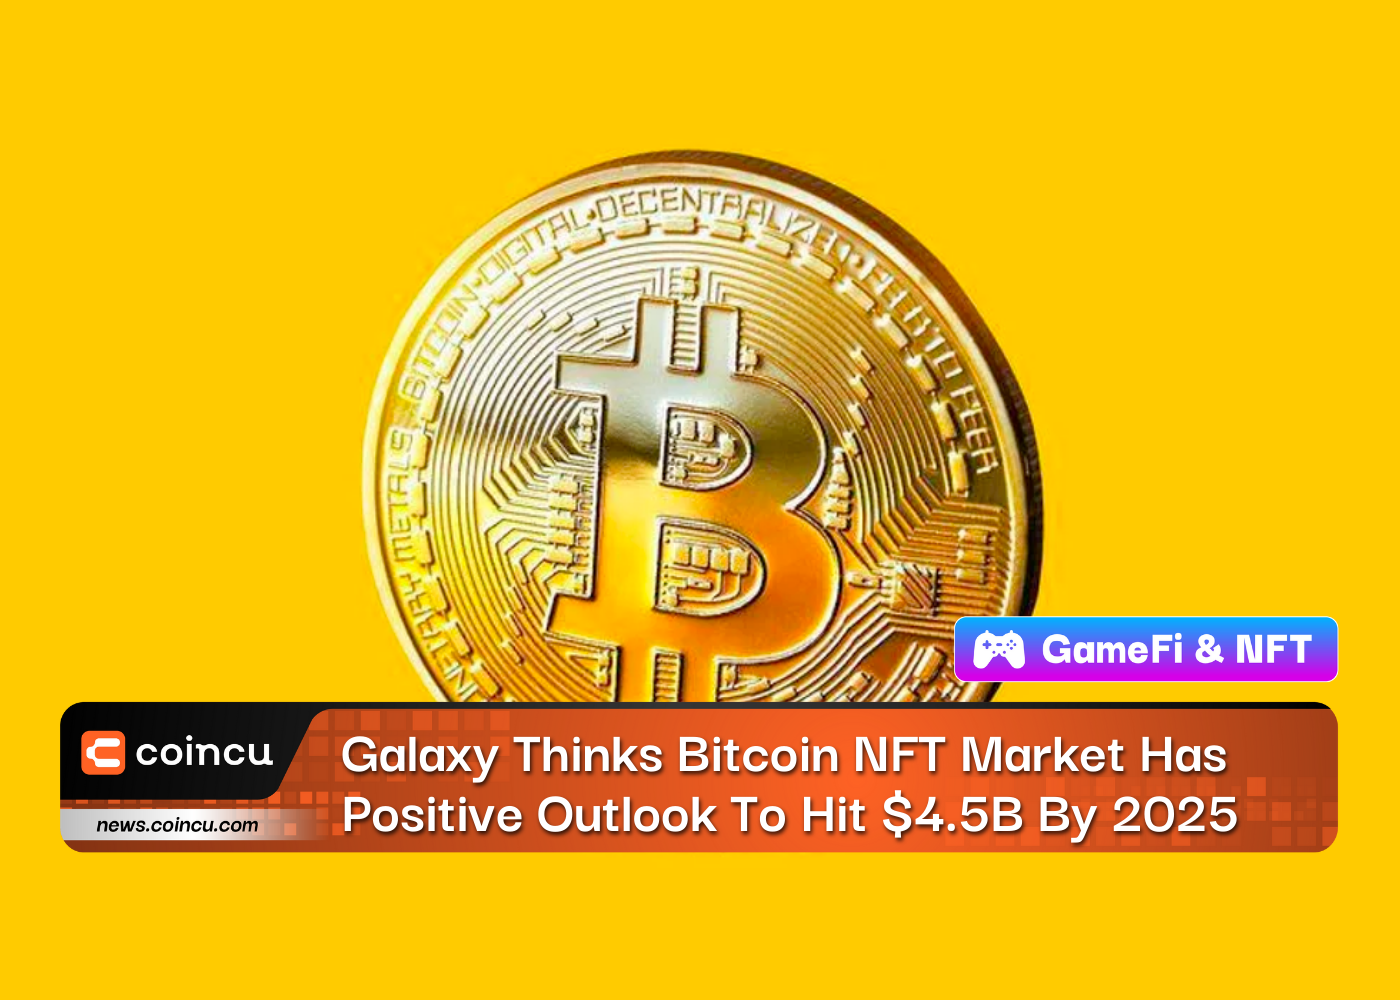 Galaxy geht davon aus, dass der Bitcoin-NFT-Markt gute Aussichten hat und bis 4.5 2025 Milliarden US-Dollar erreichen wird